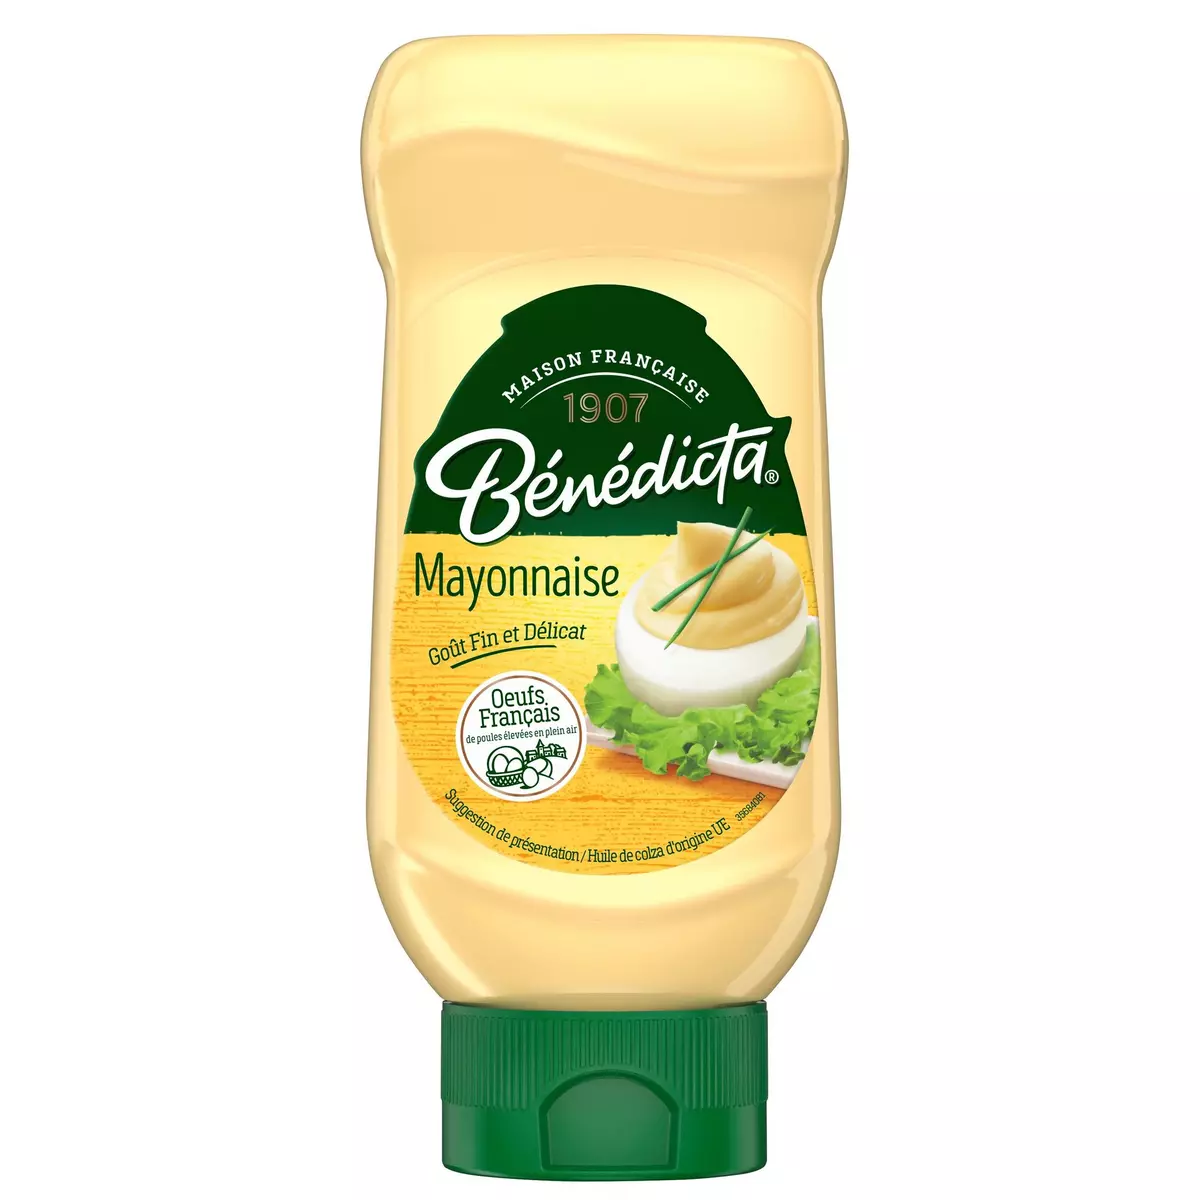 BENEDICTA Mayonnaise flacon souple 400g